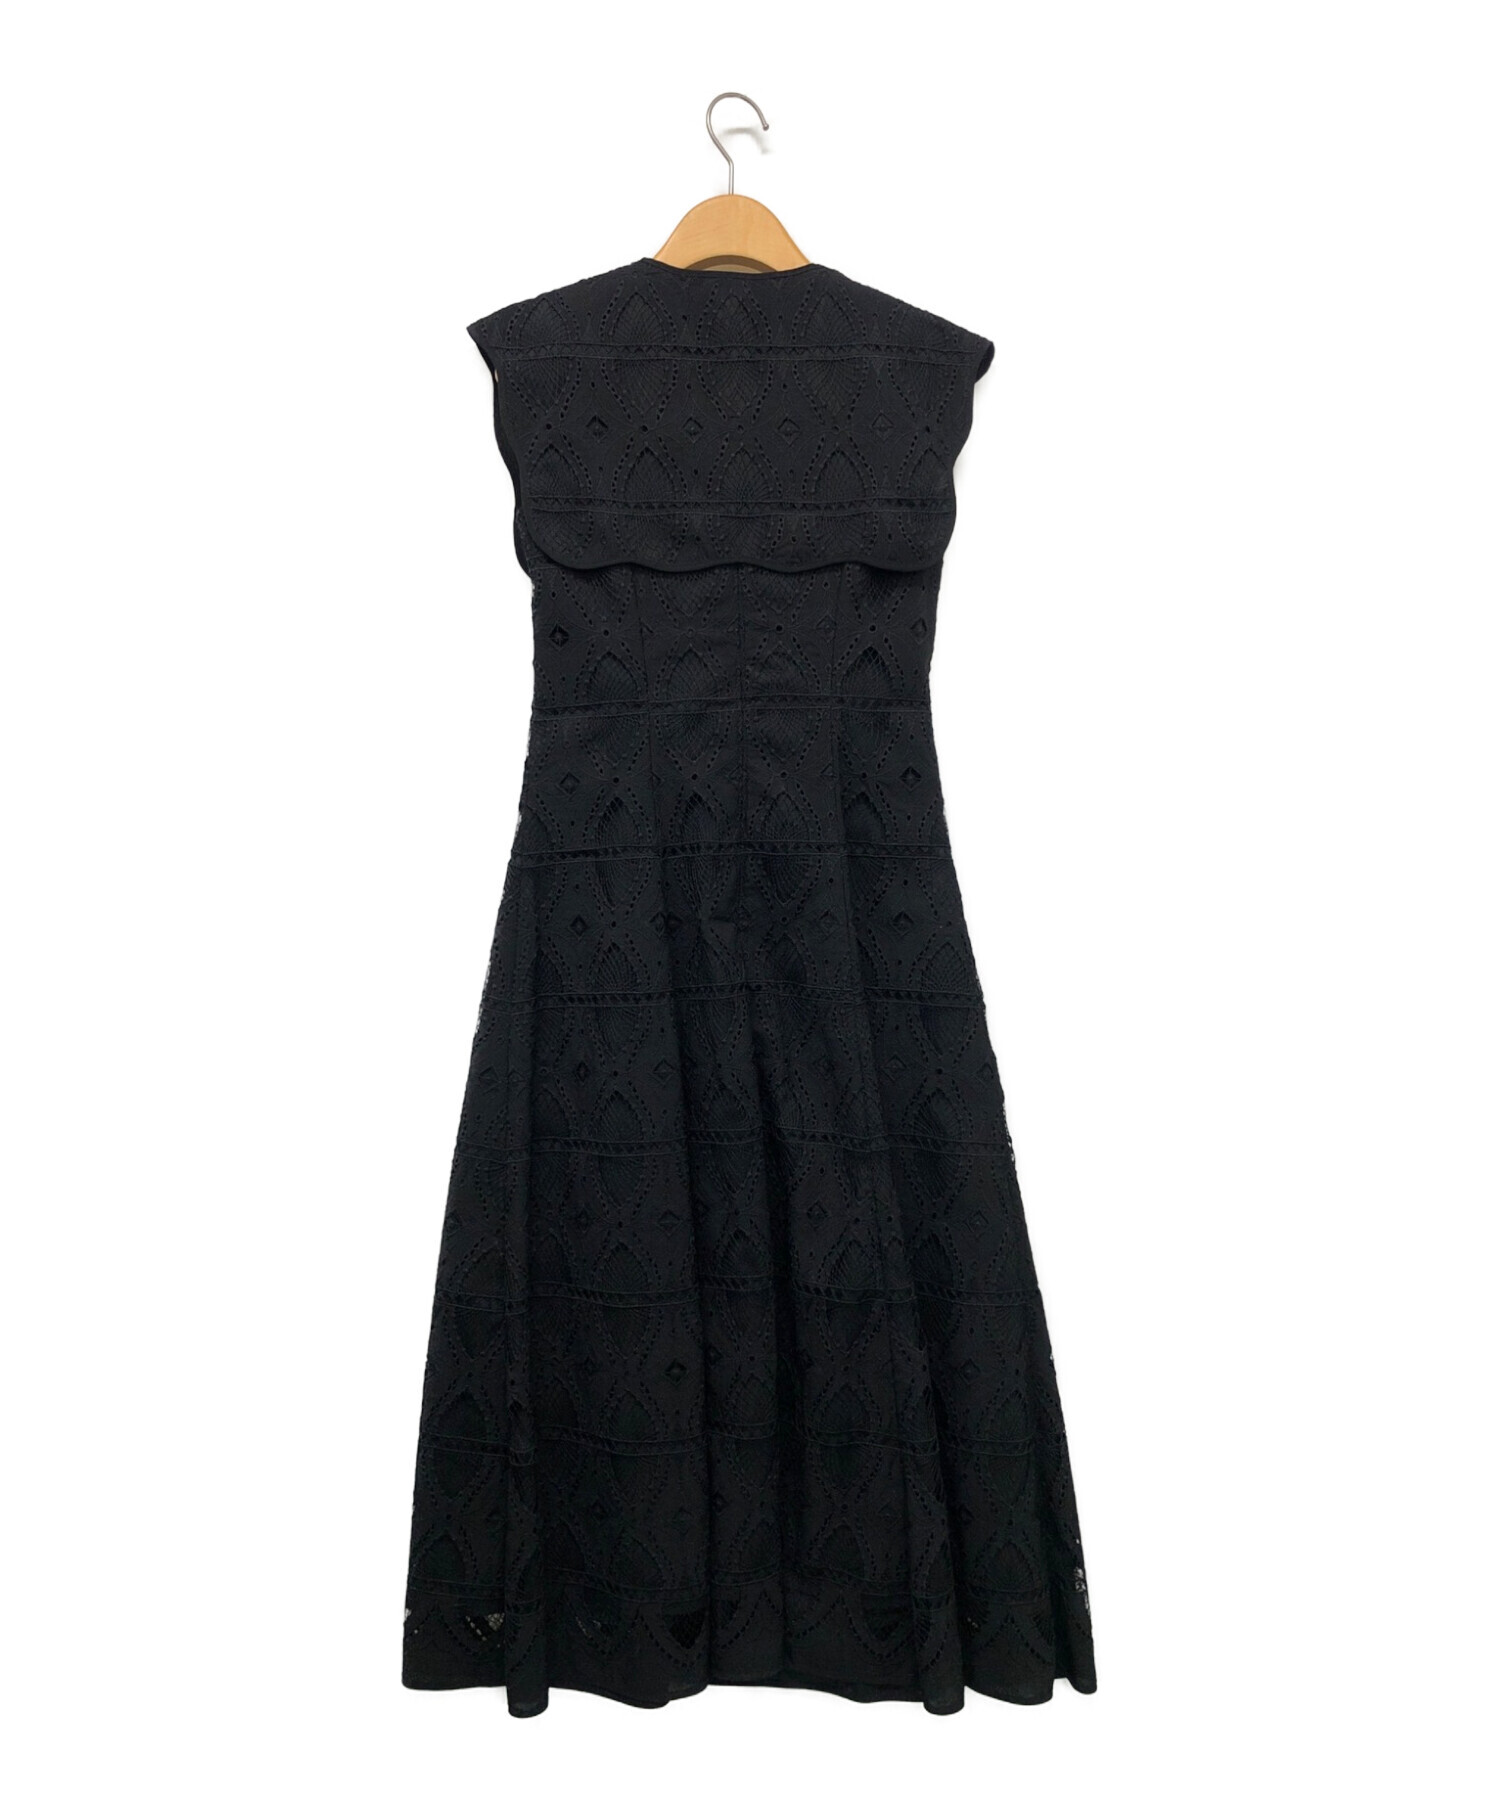 HER LIP TO (ハーリップトゥ) Saint Germain Lace Dress ブラック サイズ:S